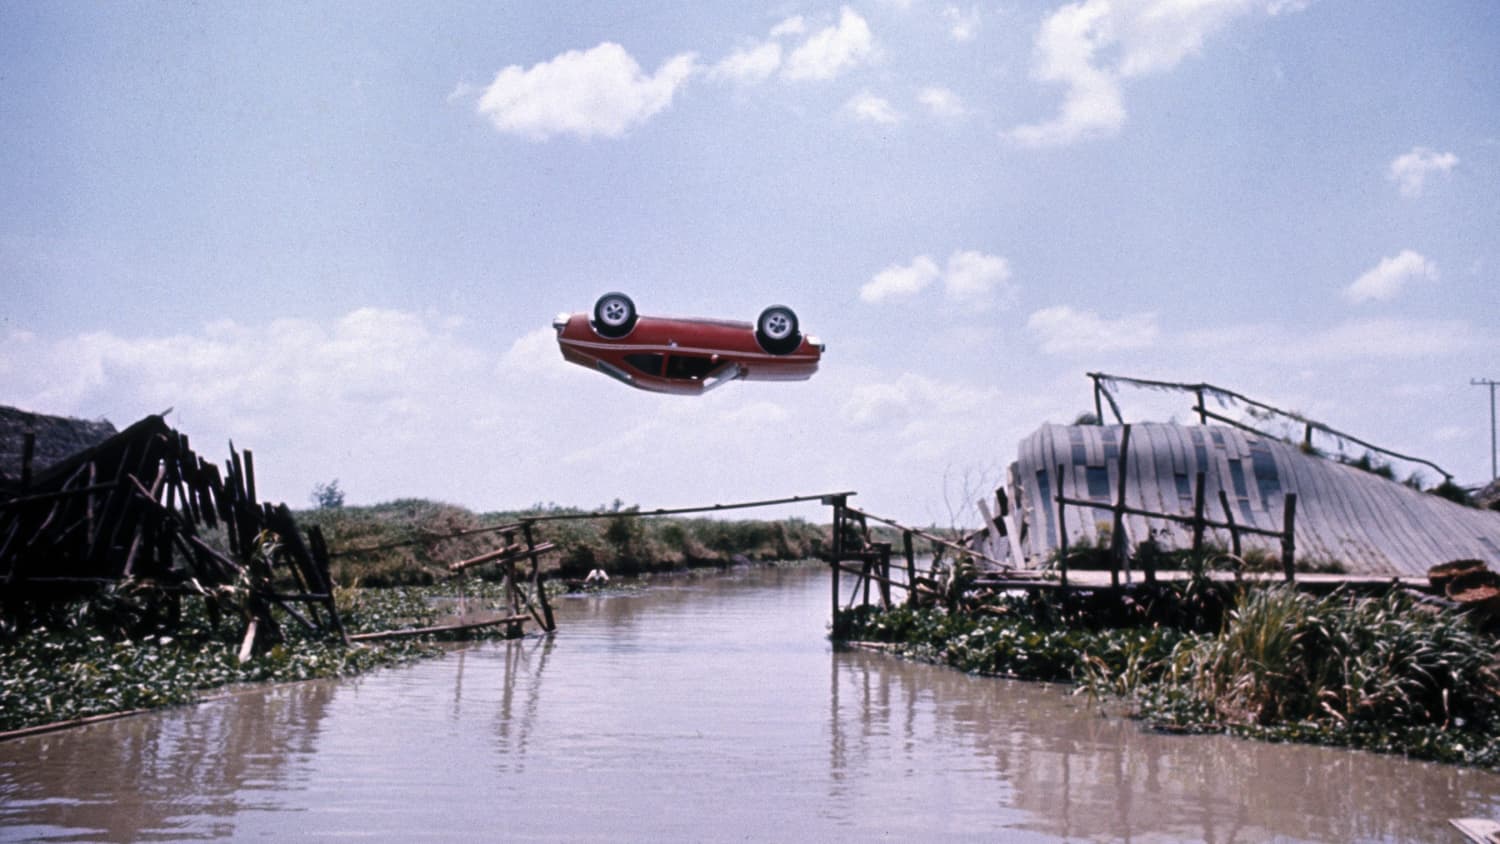 پرش خودروی هورنت از روی رودخانه در فیلم جیمز باند